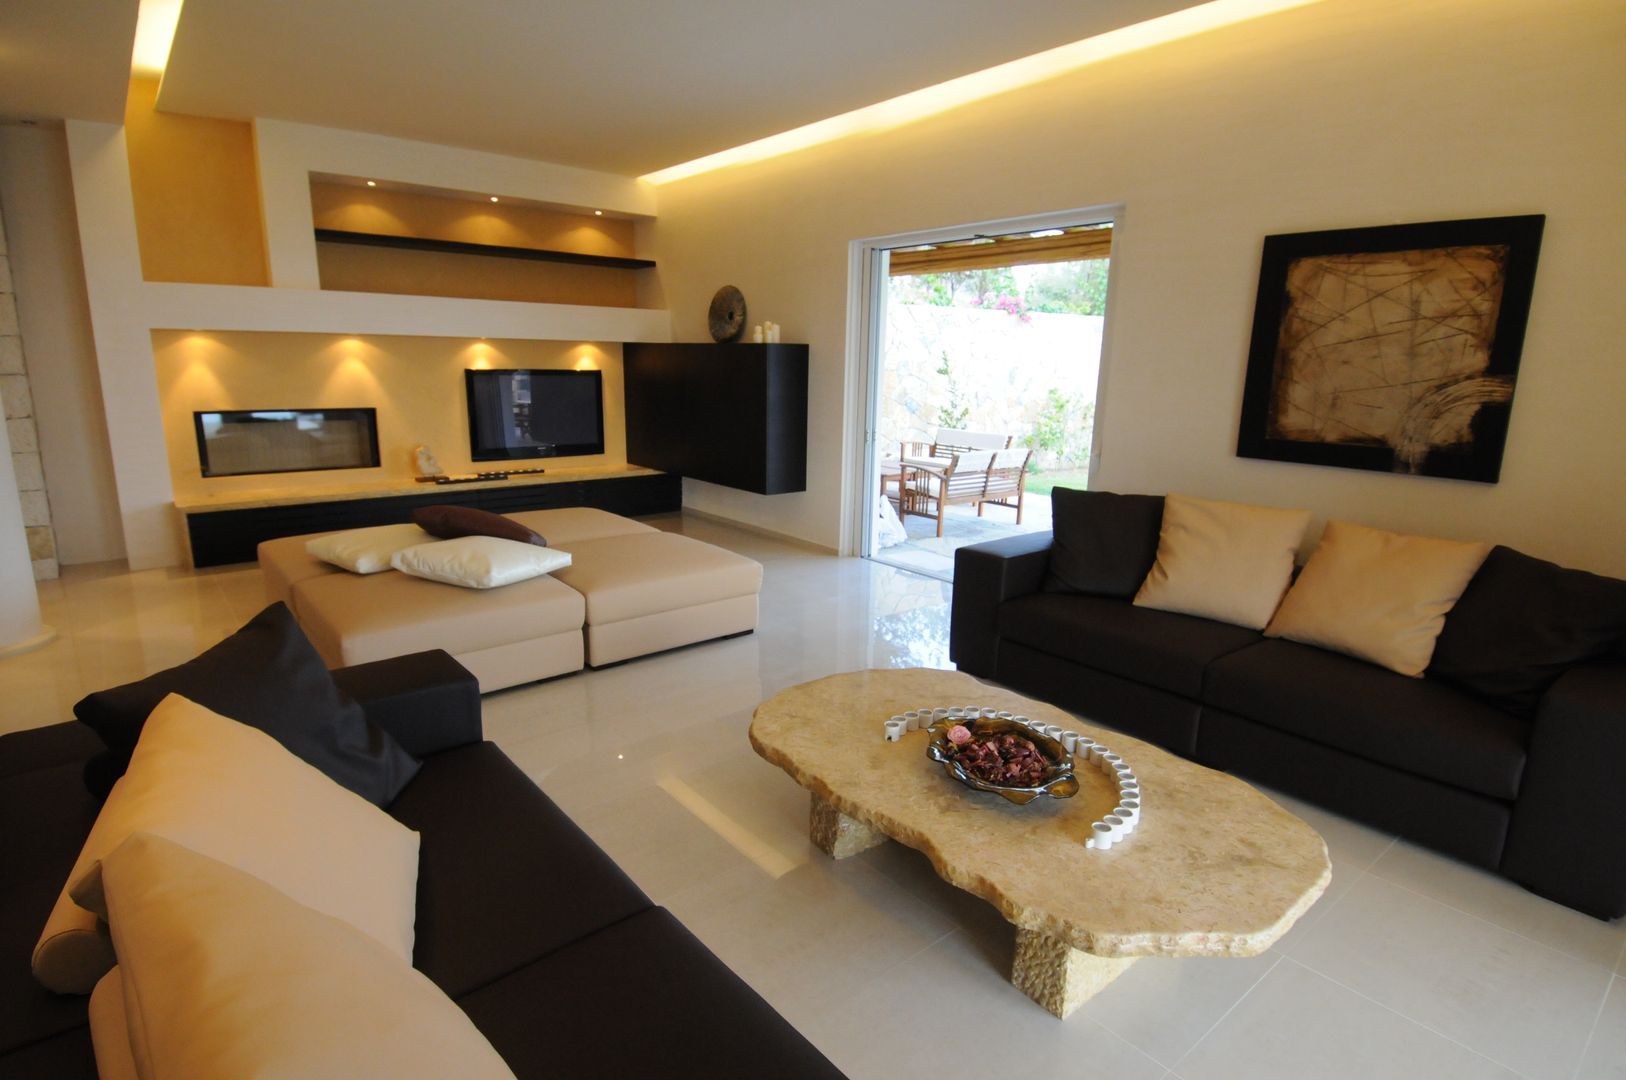 Vista dell'area relax del soggiorno CARLO CHIAPPANI interior designer Soggiorno in stile mediterraneo